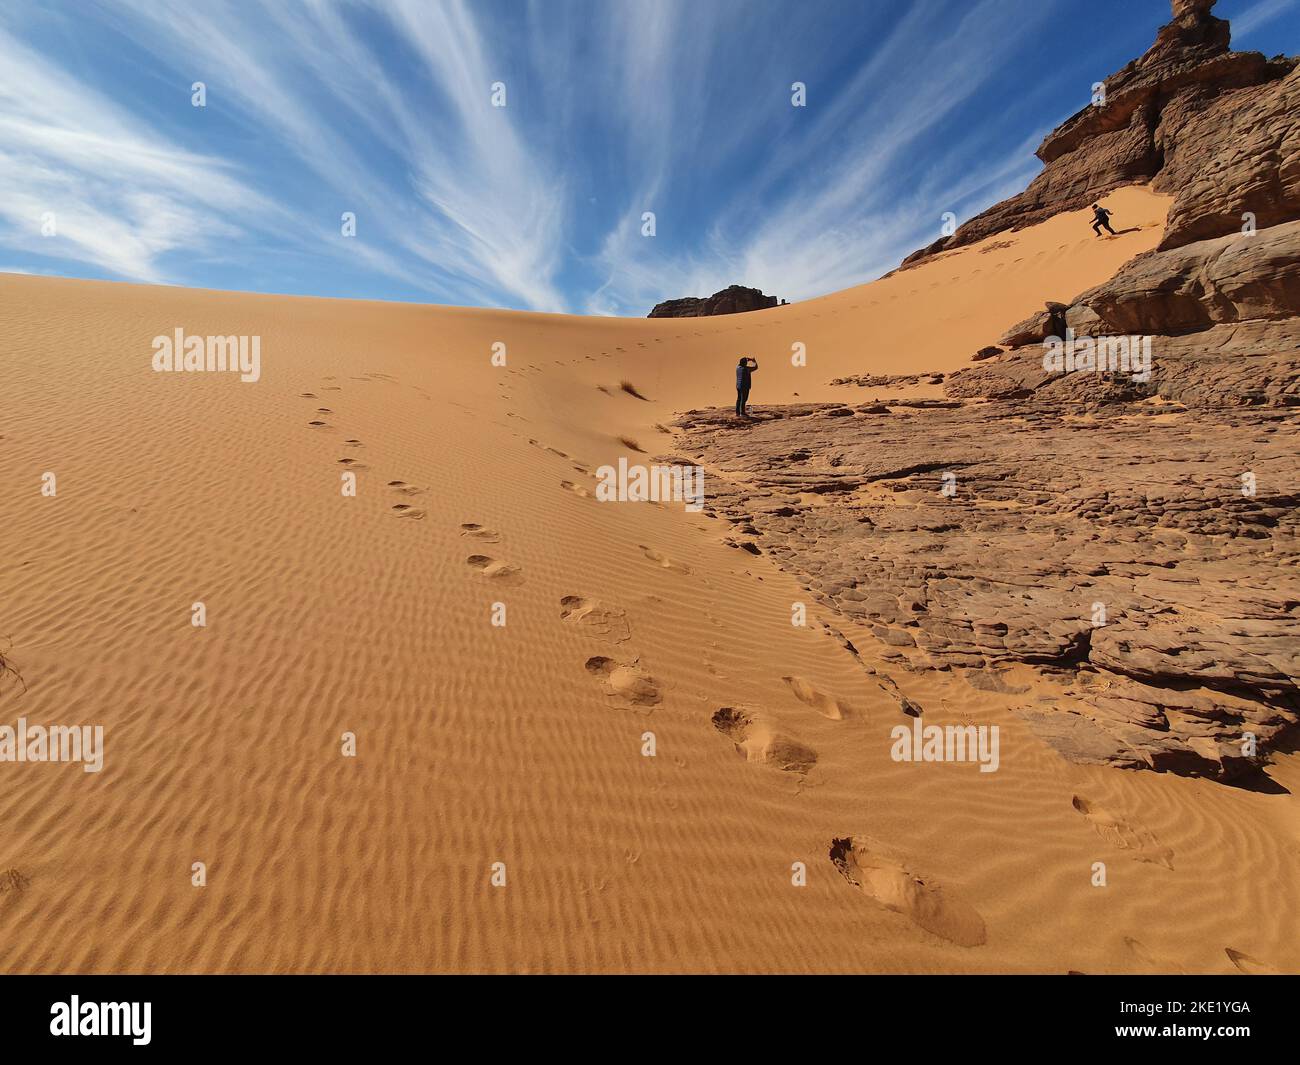 vue à angle bas d'un homme qui filme un autre avec son téléphone, commencez à courir vers le bas d'une dune de sable rocheux avec des empreintes de pas. Ciel bleu ciel nuageux en arrière-plan. Banque D'Images